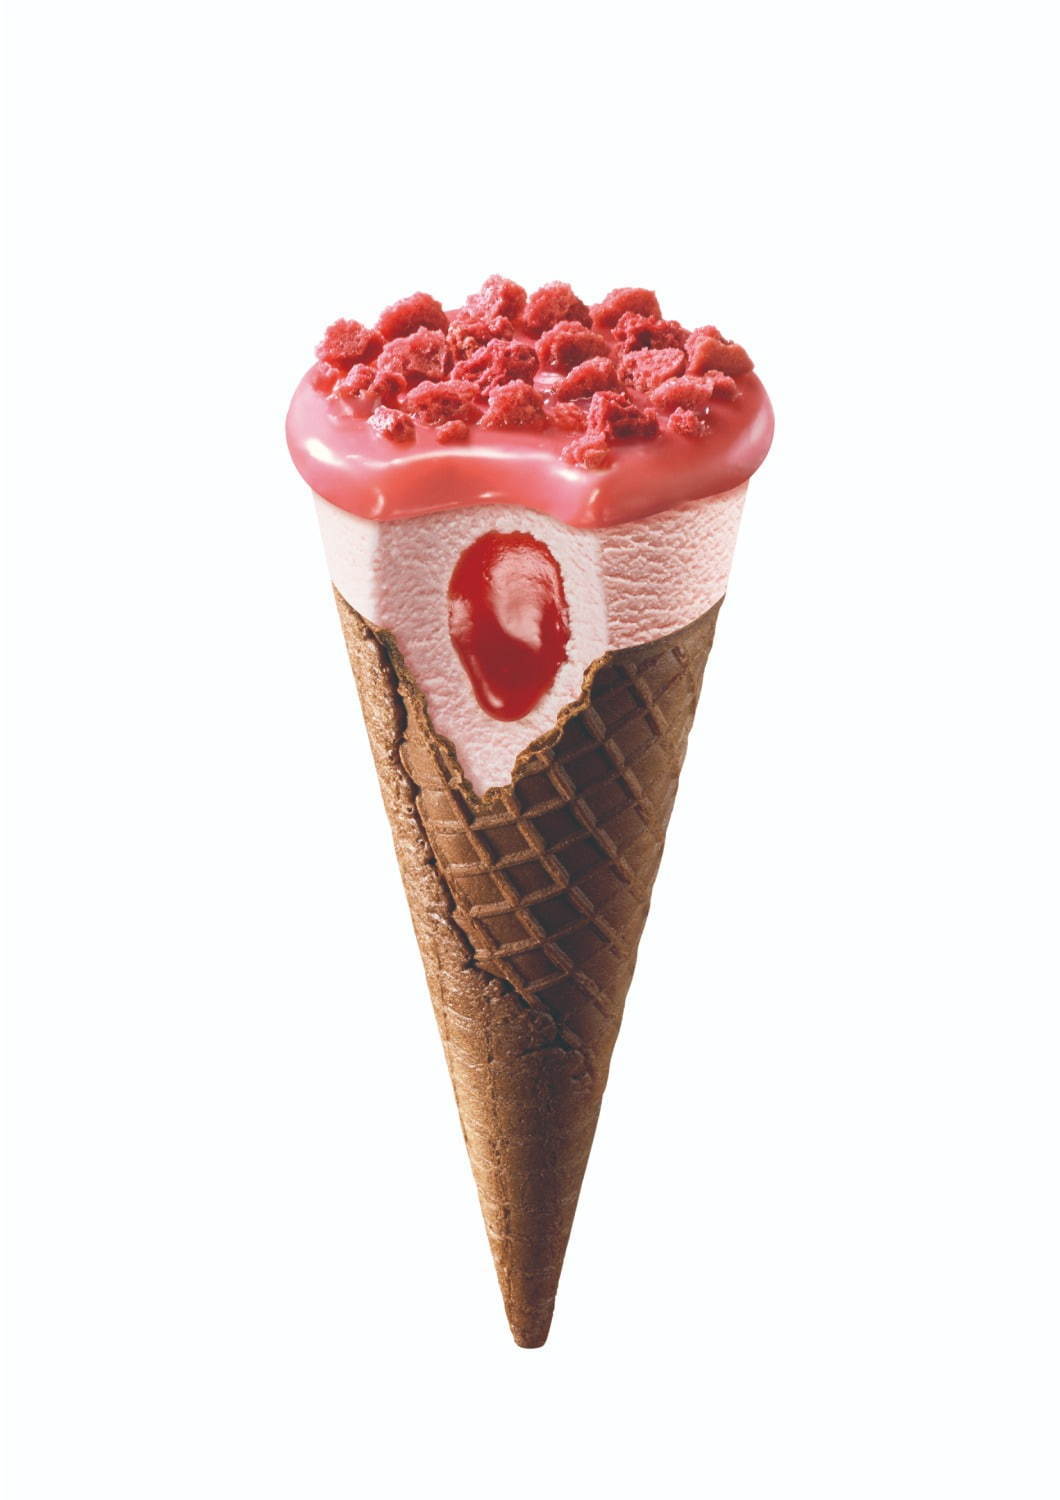 グリコ ジャイアントコーン 大人シリーズ ルビーチョコレート ベリーヨーグルト風味アイスの新作 ファッションプレス